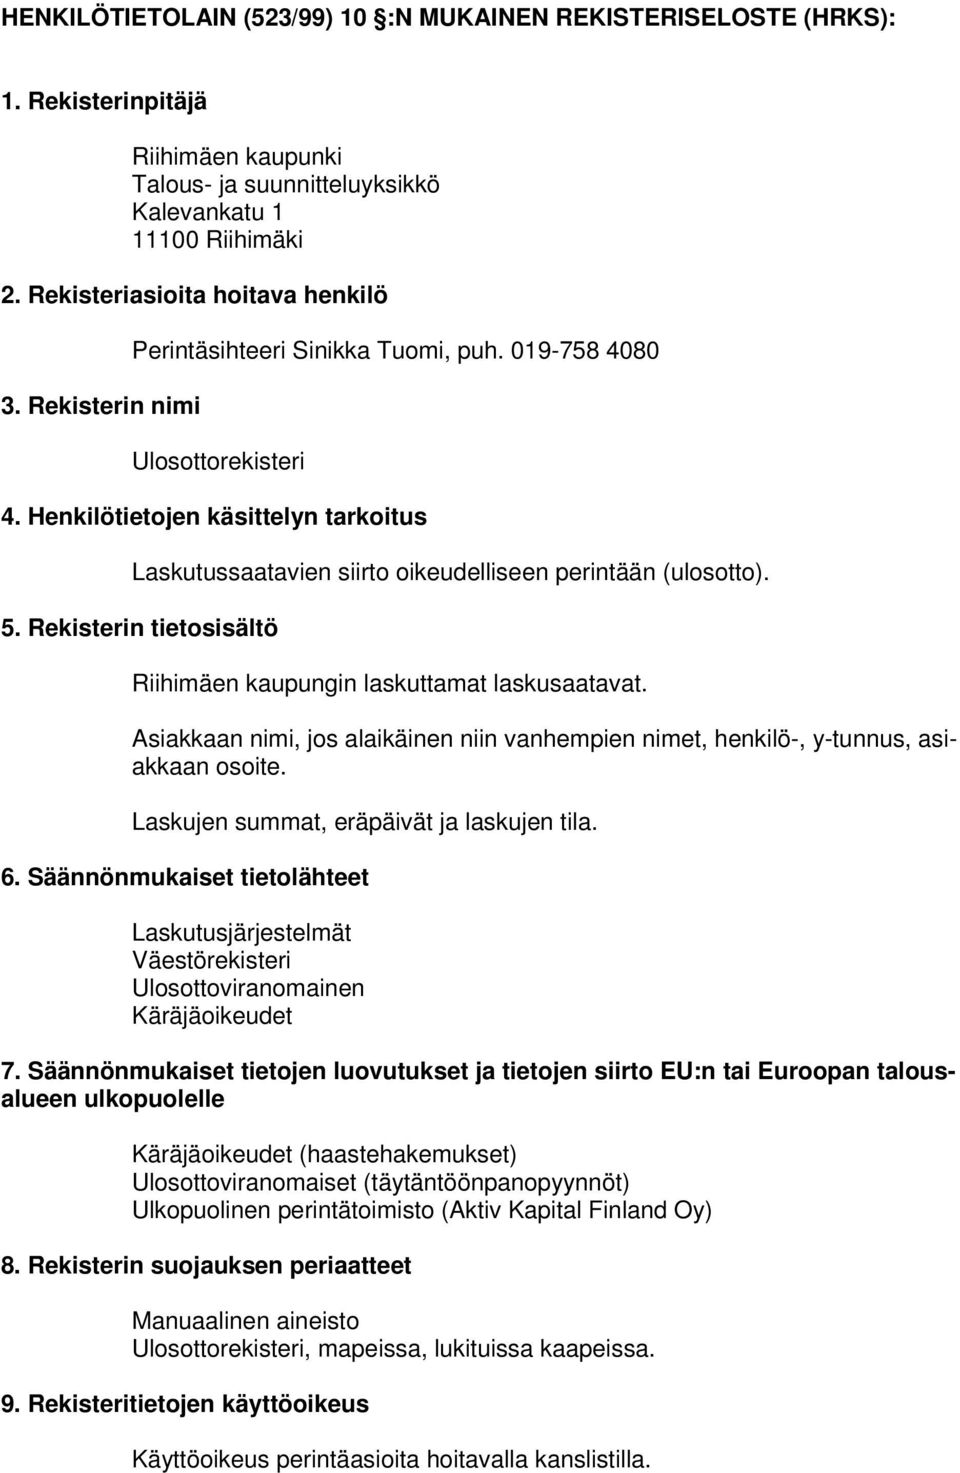 Henkilötietojen käsittelyn tarkoitus Laskutussaatavien siirto oikeudelliseen perintään (ulosotto). 5. Rekisterin tietosisältö Riihimäen kaupungin laskuttamat laskusaatavat.